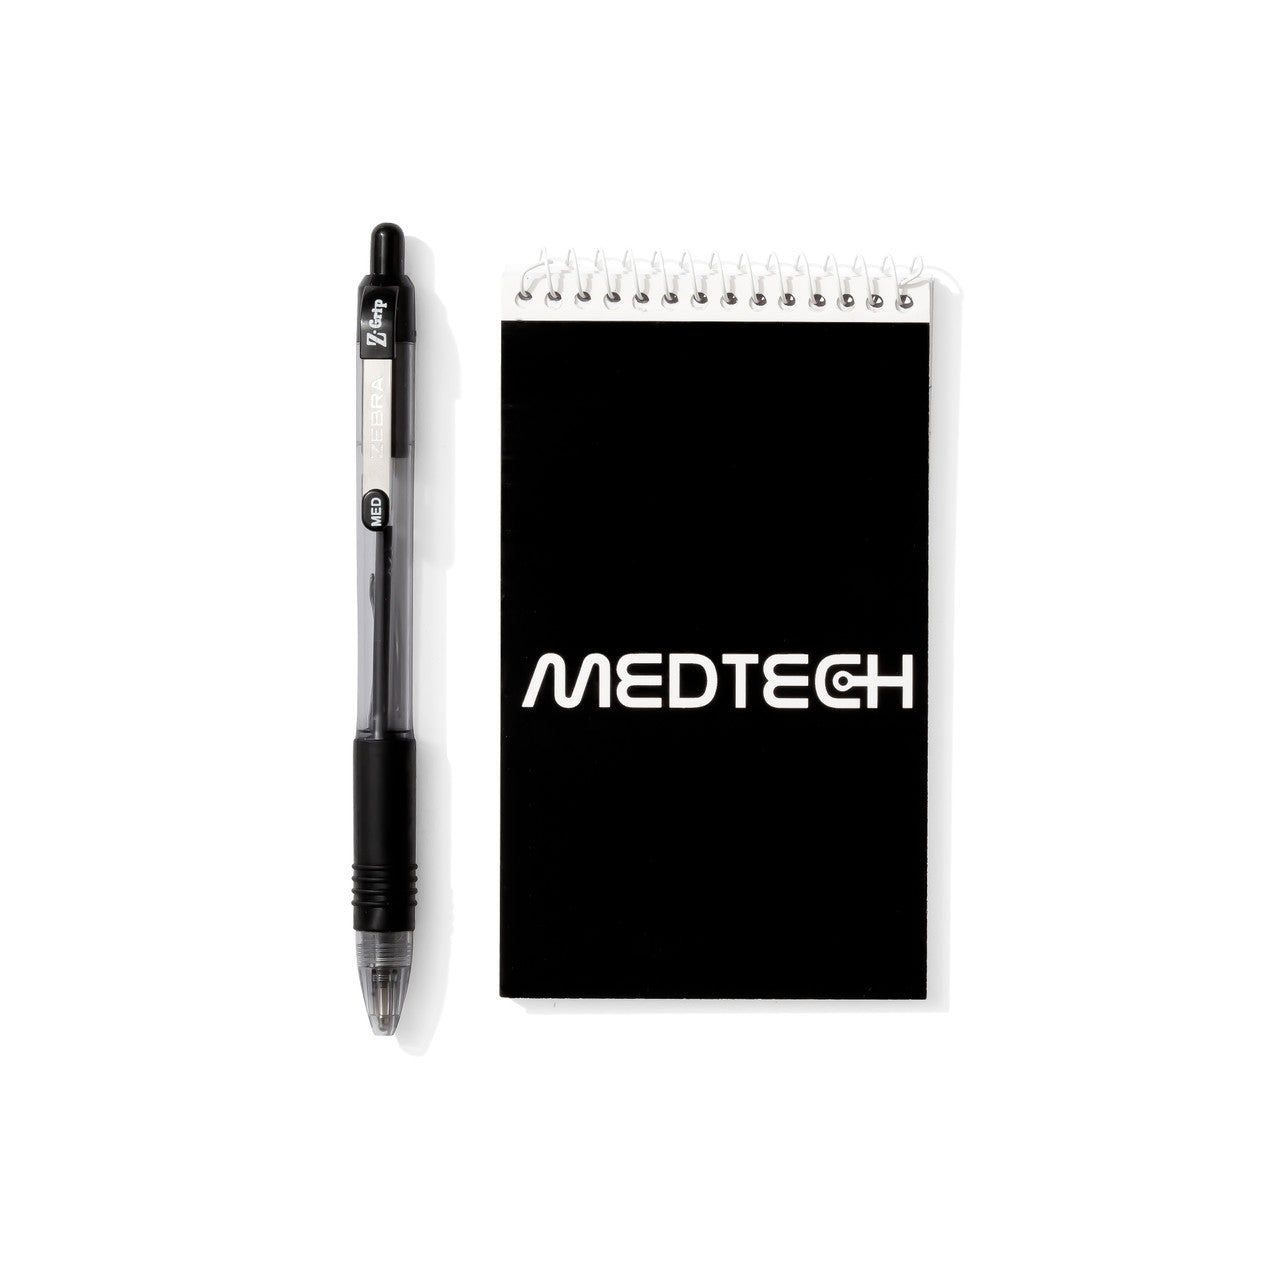 MedTech notebook